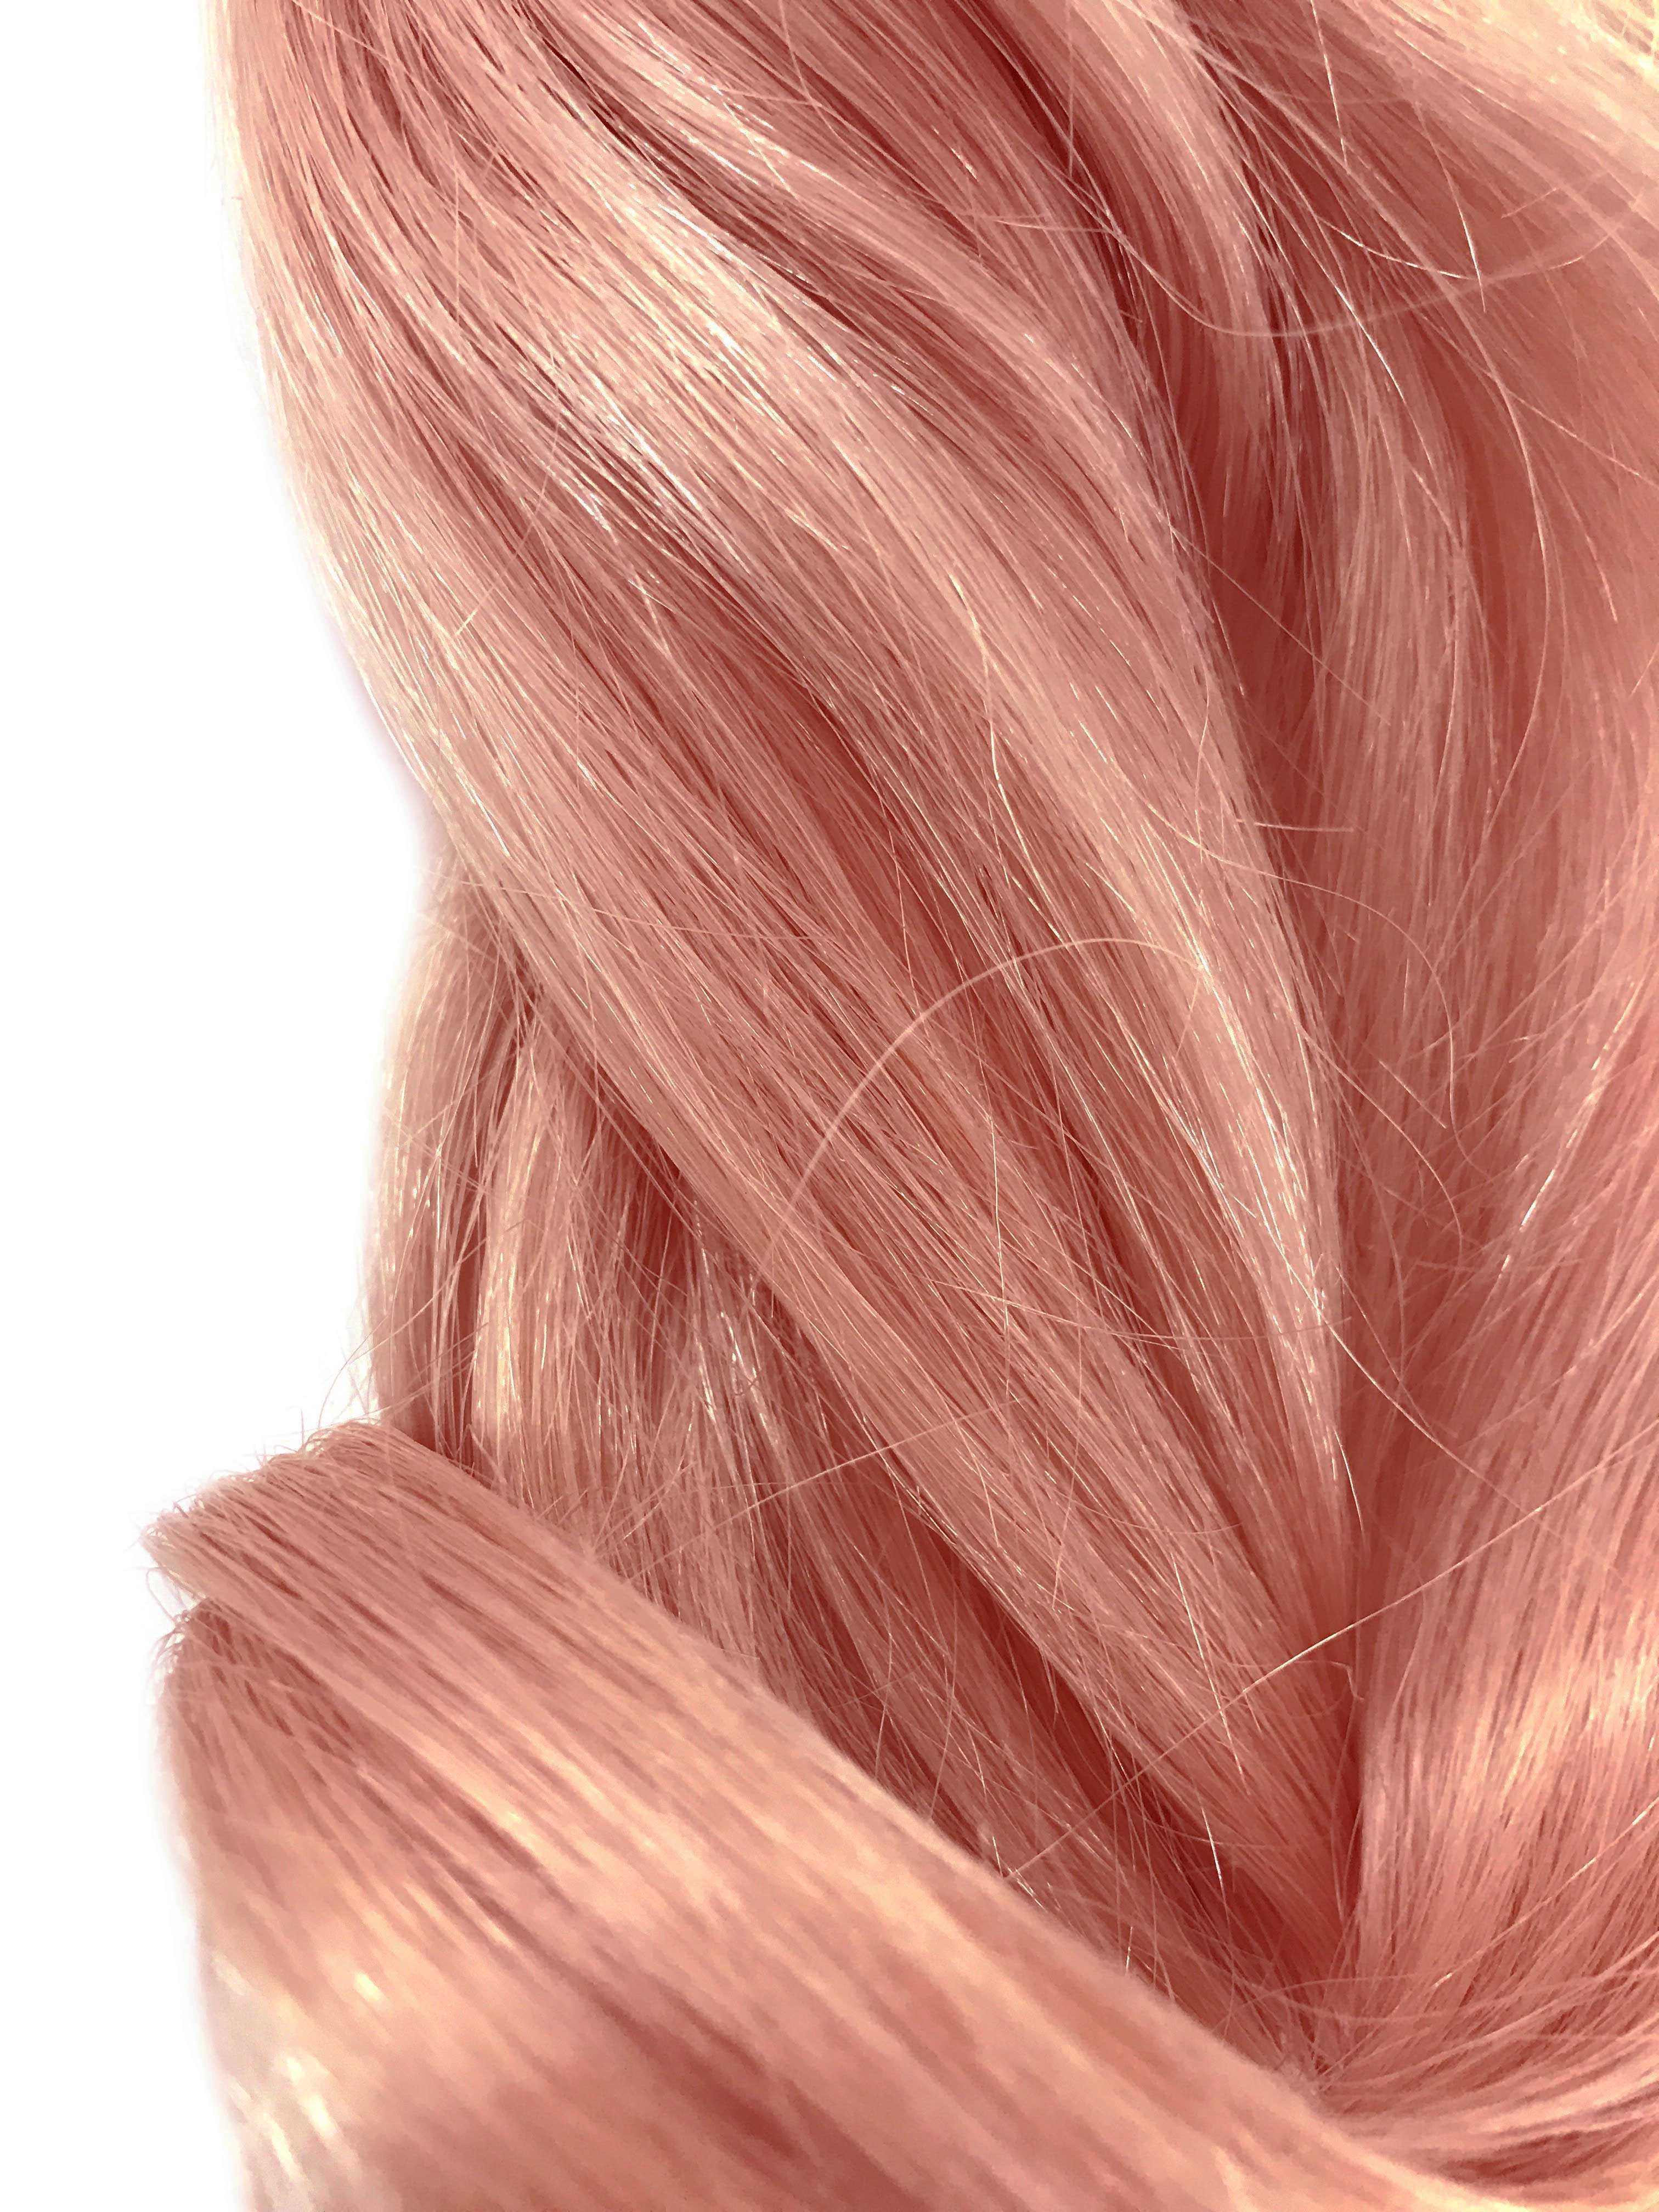 Rose gold hair color краска для волос